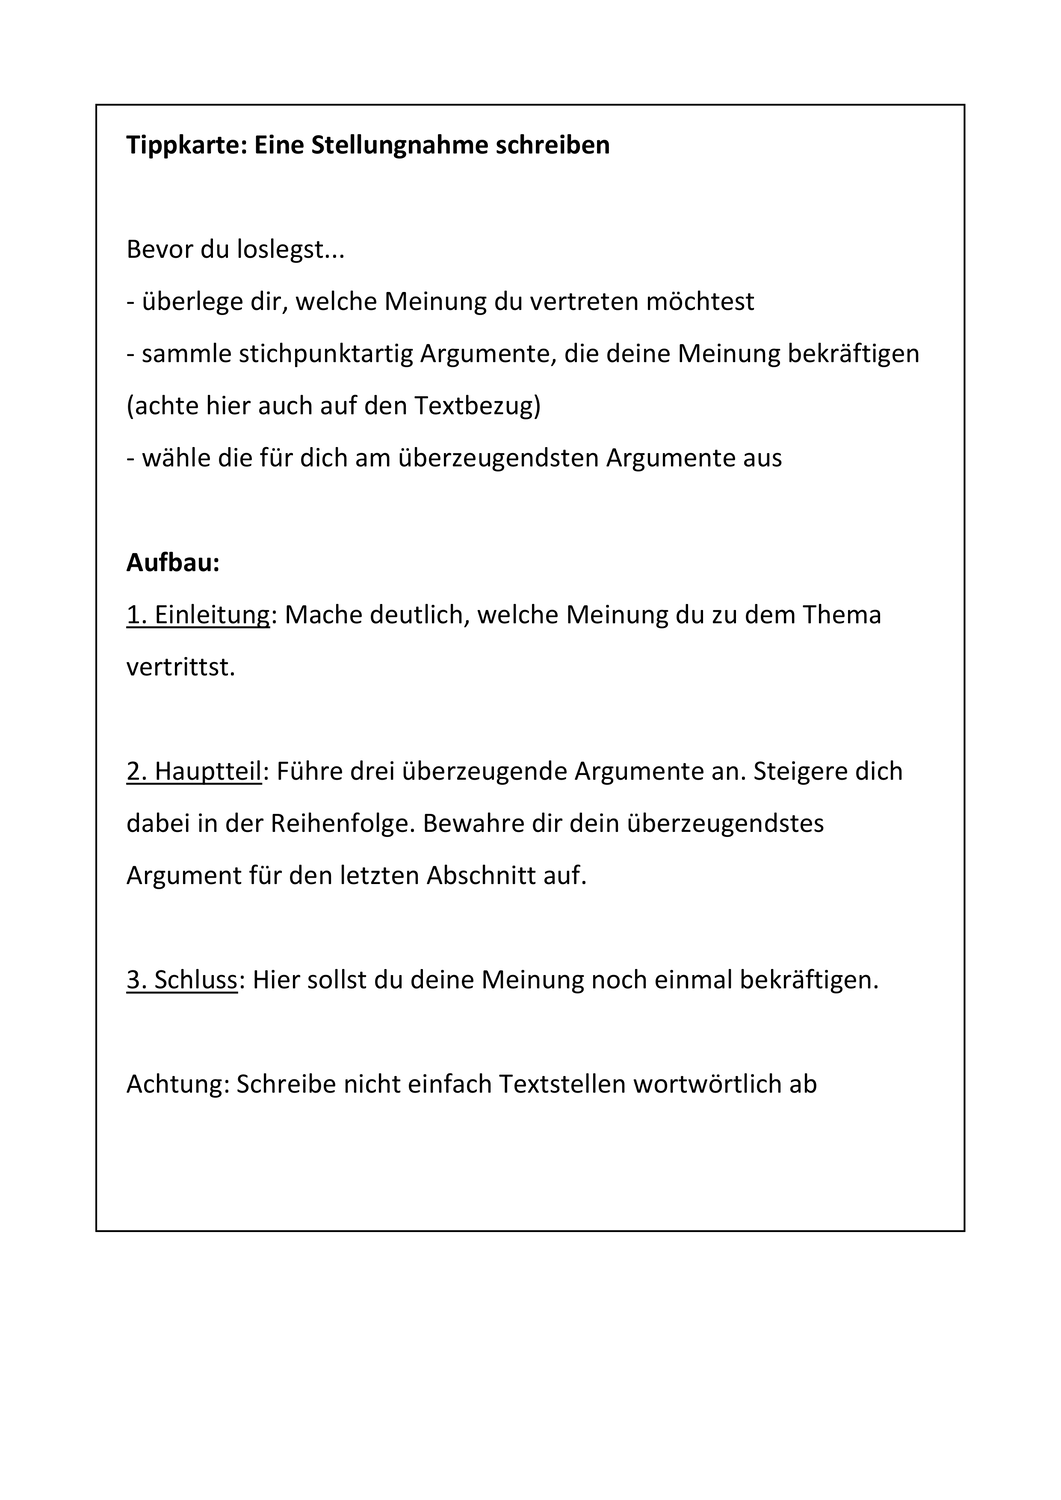 Tippkarte Stellungnahme Unterrichtsmaterial Im Fach Deutsch Tipps Deutsch Lernen Unterrichtsmaterial